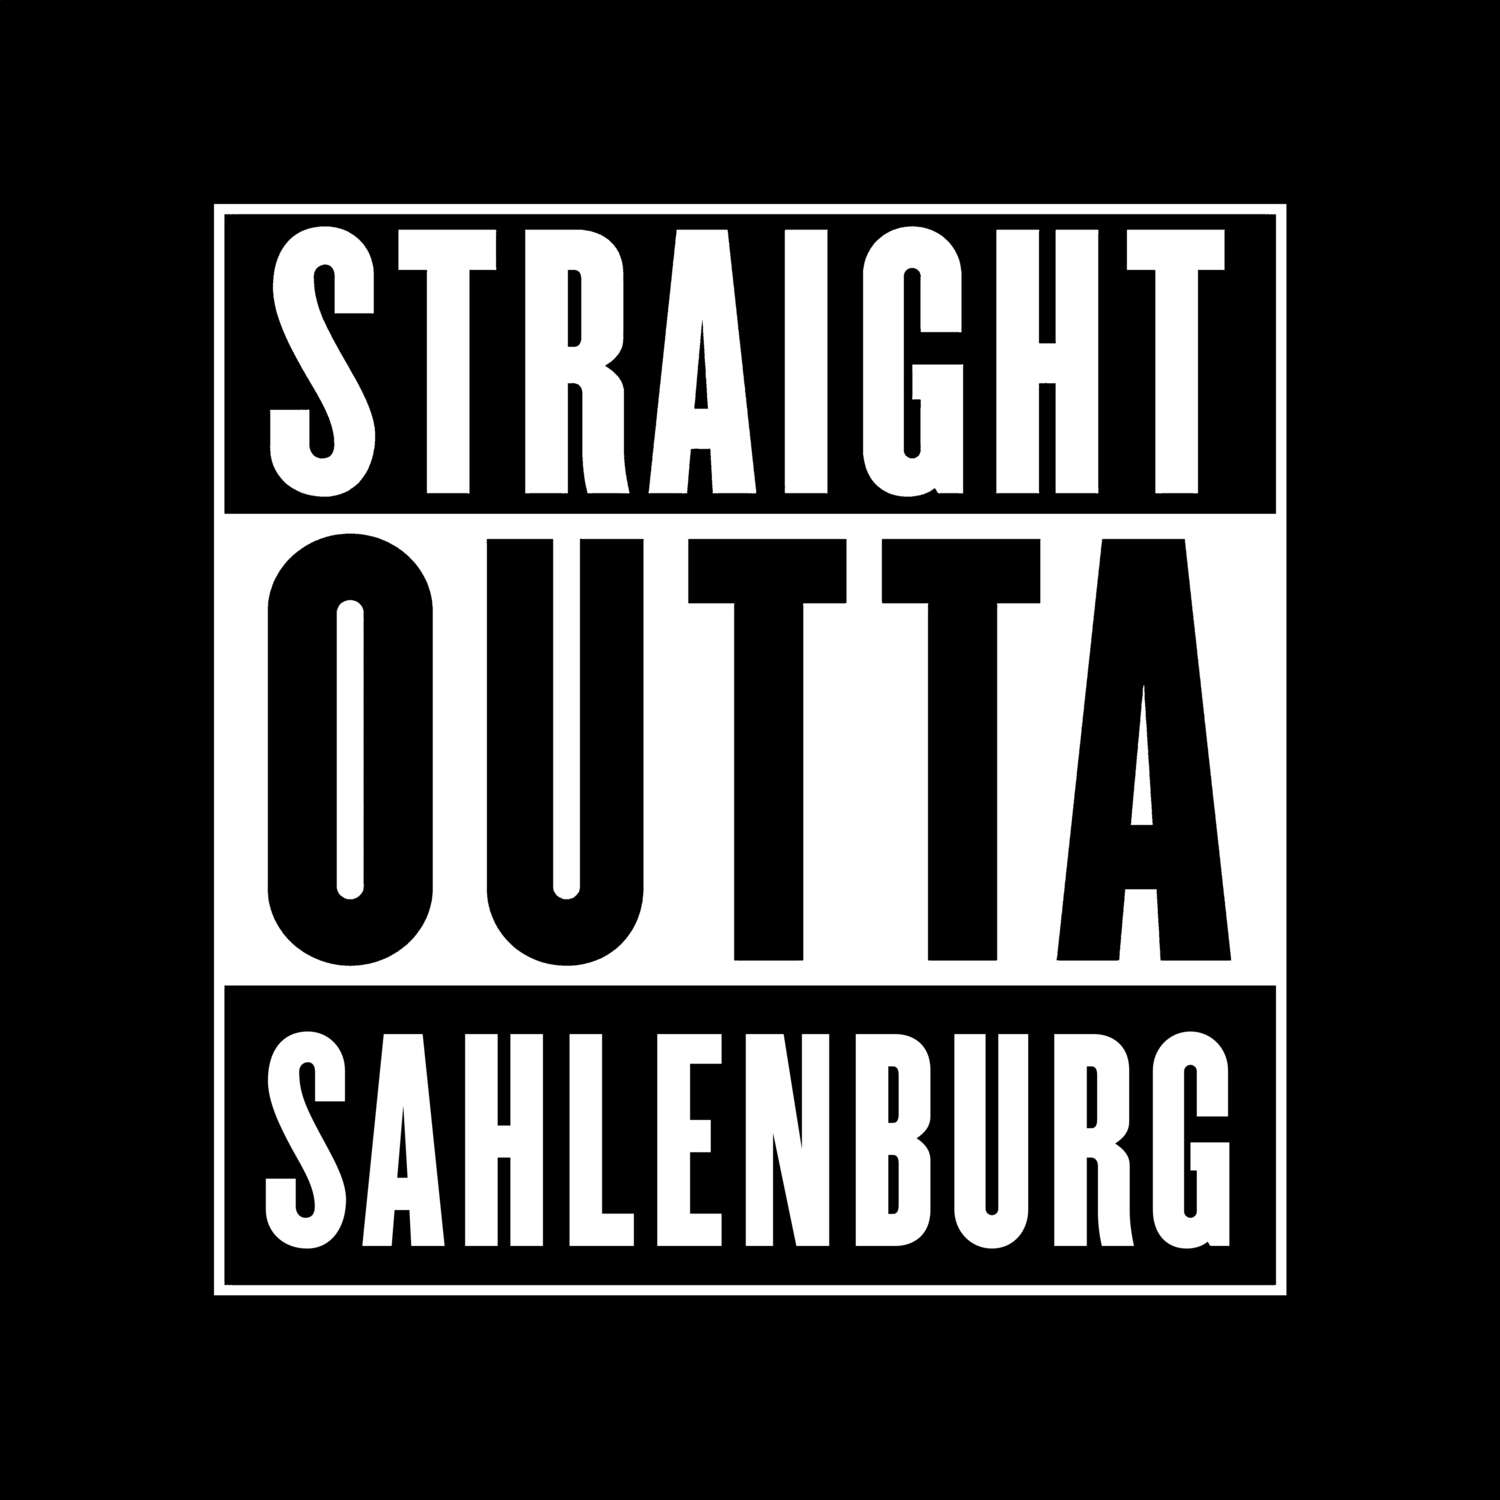 Sahlenburg T-Shirt »Straight Outta«